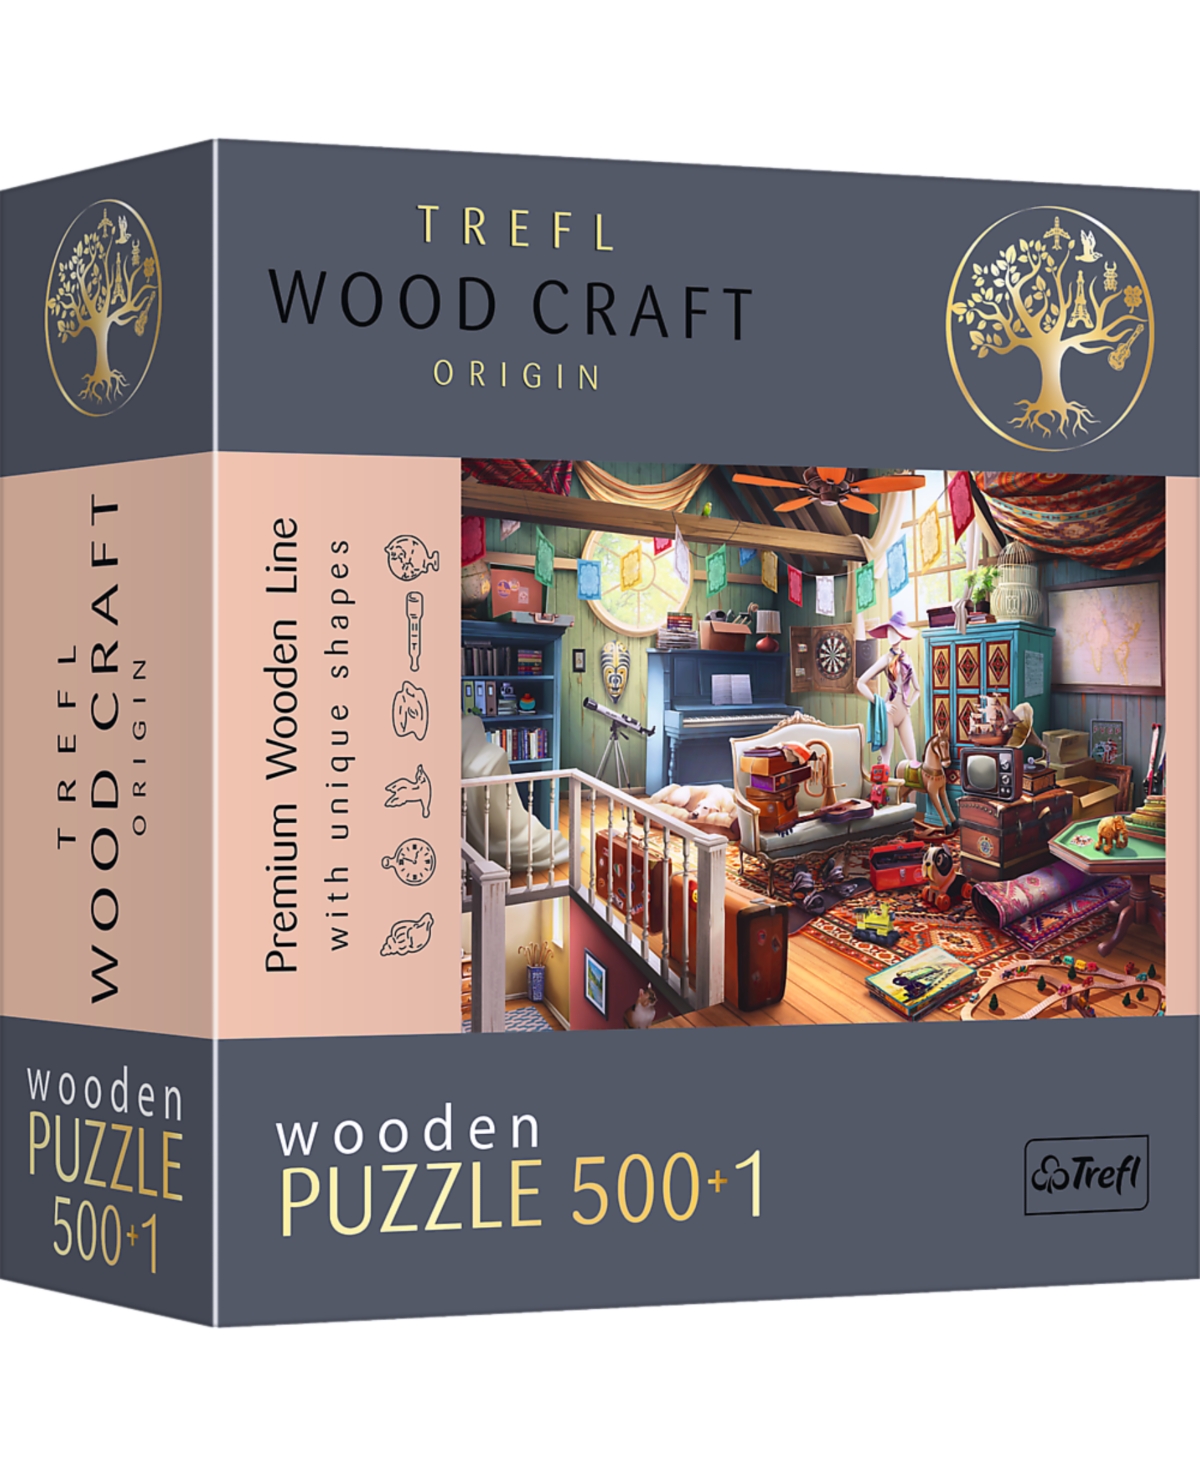 Trefl Wood Craft 500 Plus 1 Wooden Puzzle In Multi